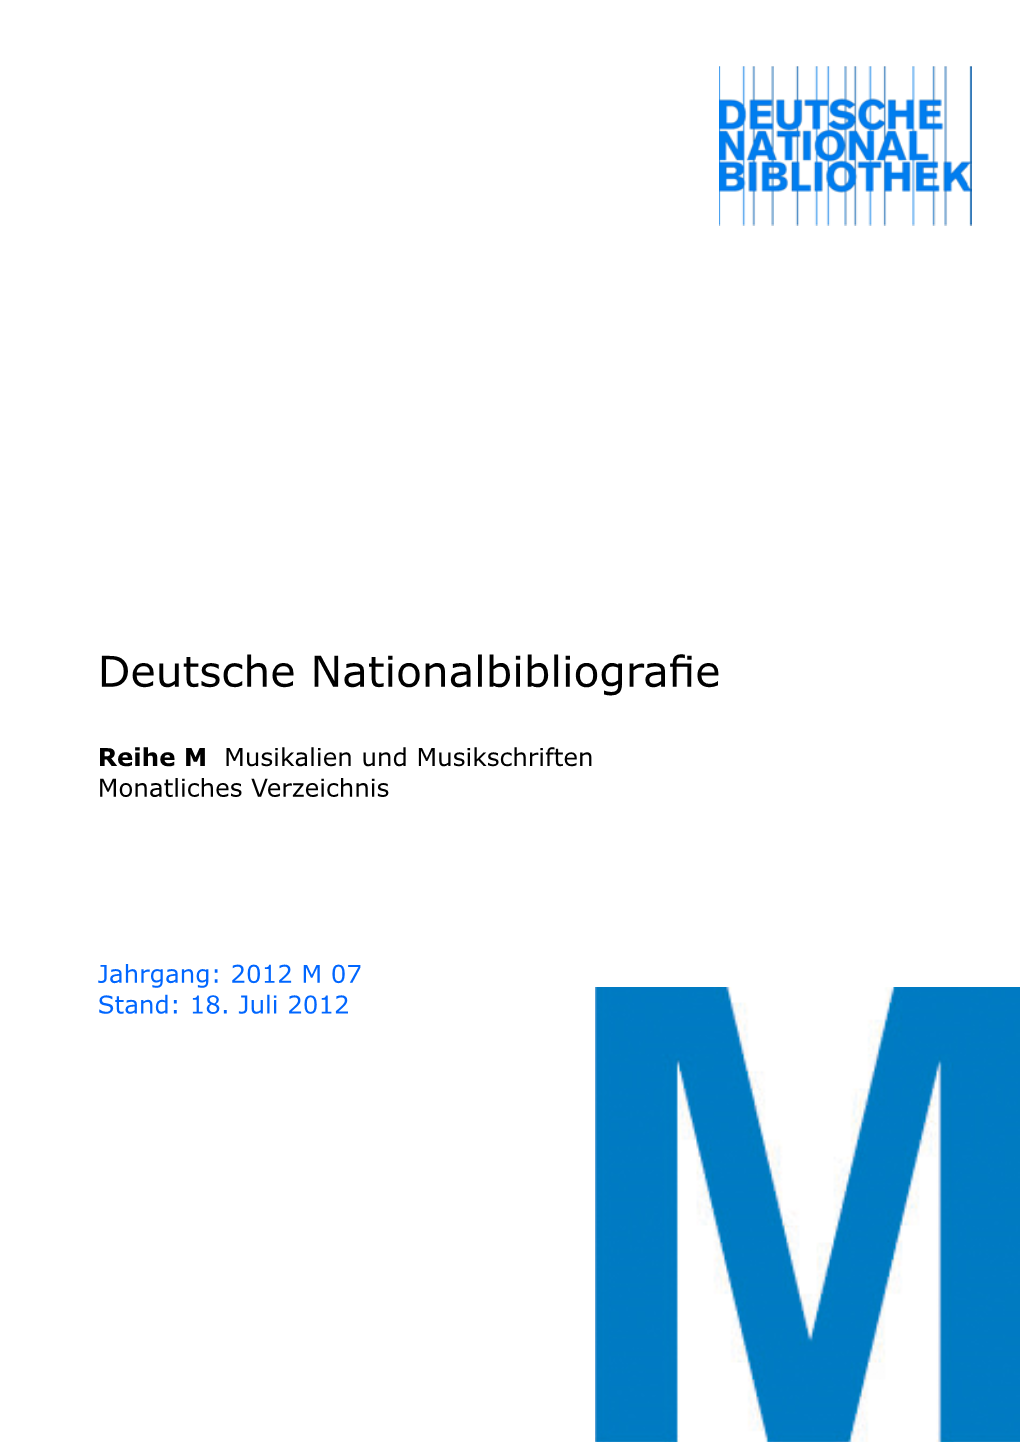 Deutsche Nationalbibliografie 2012 M 07